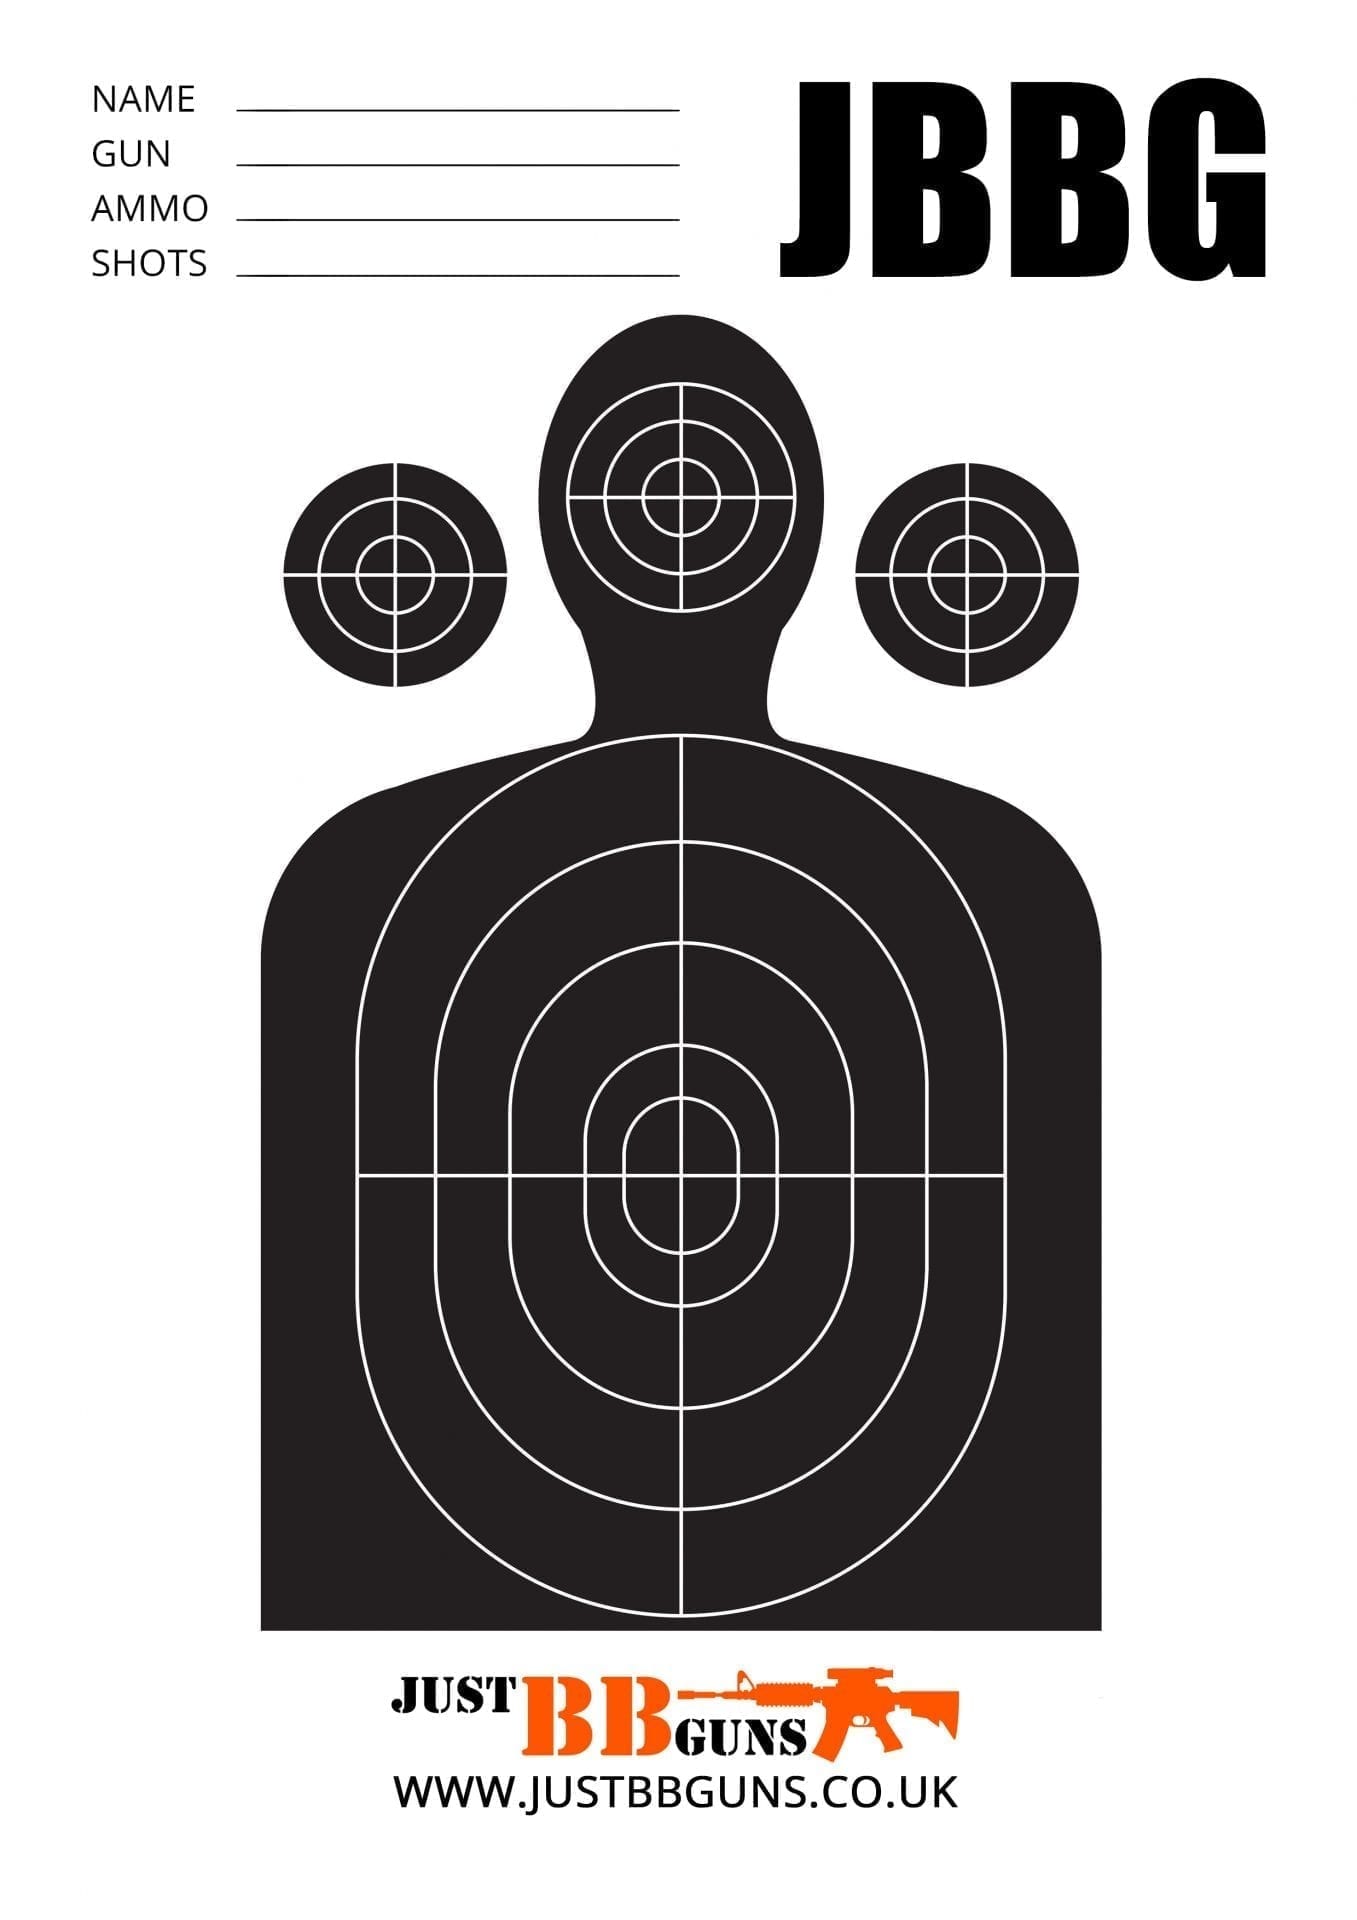 Printable Bb Gun Targets